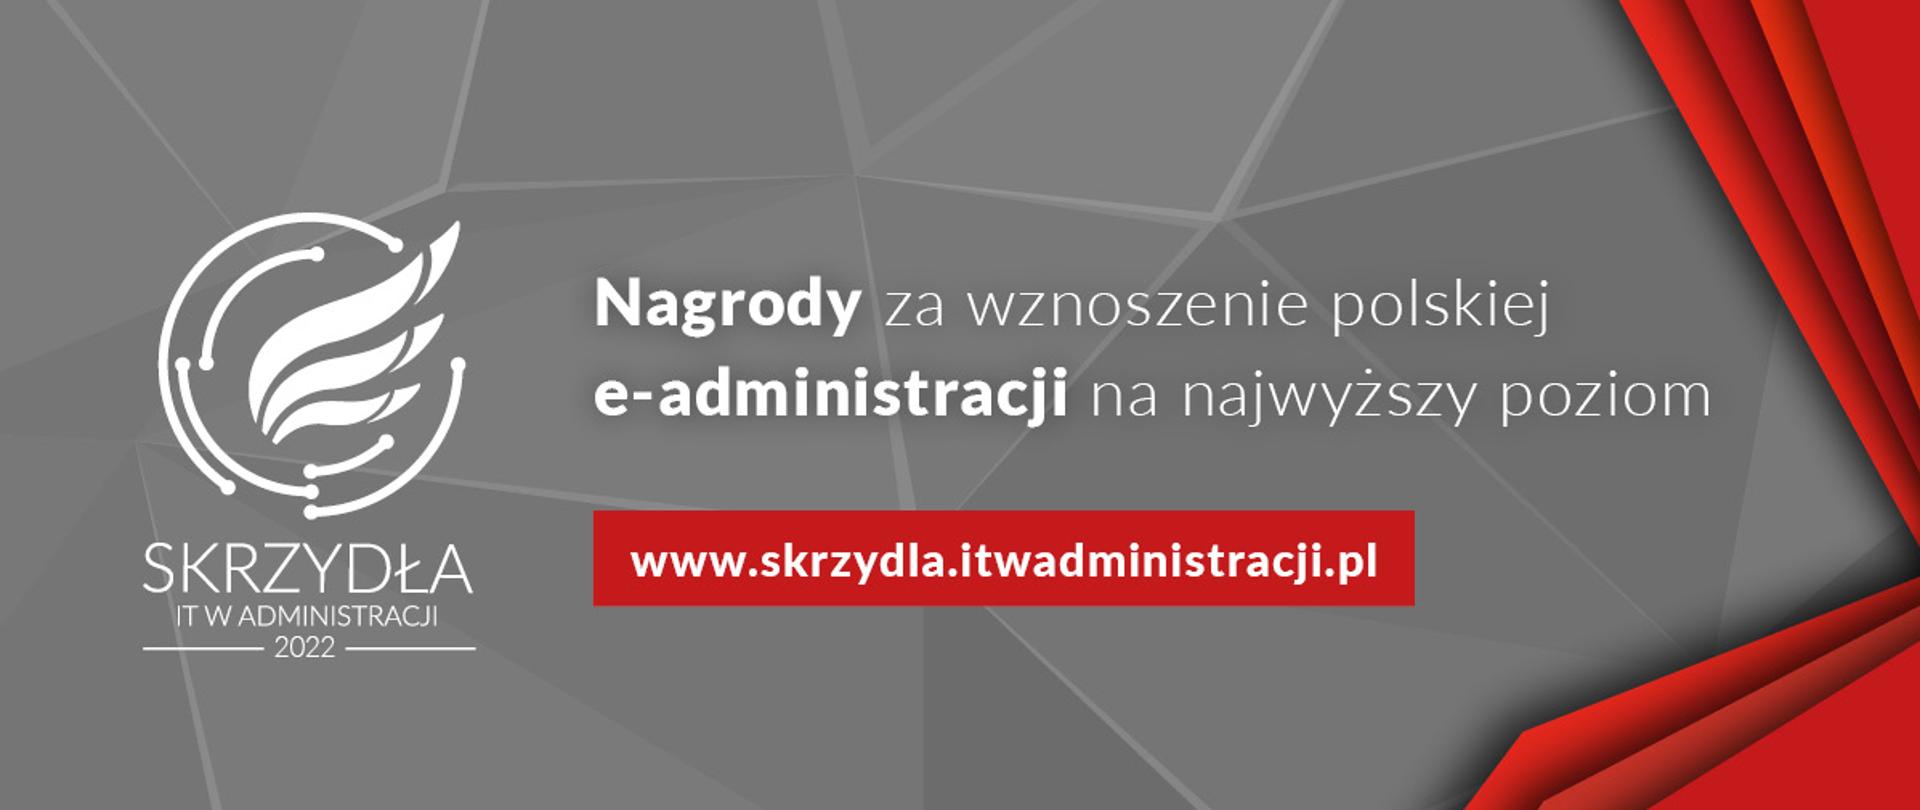 Skrzydła IT w Administracji. Nagrody za wznoszenie polskiej e-administracji na najwyższy poziom.
www.skrzydla.itwadministracji.pl